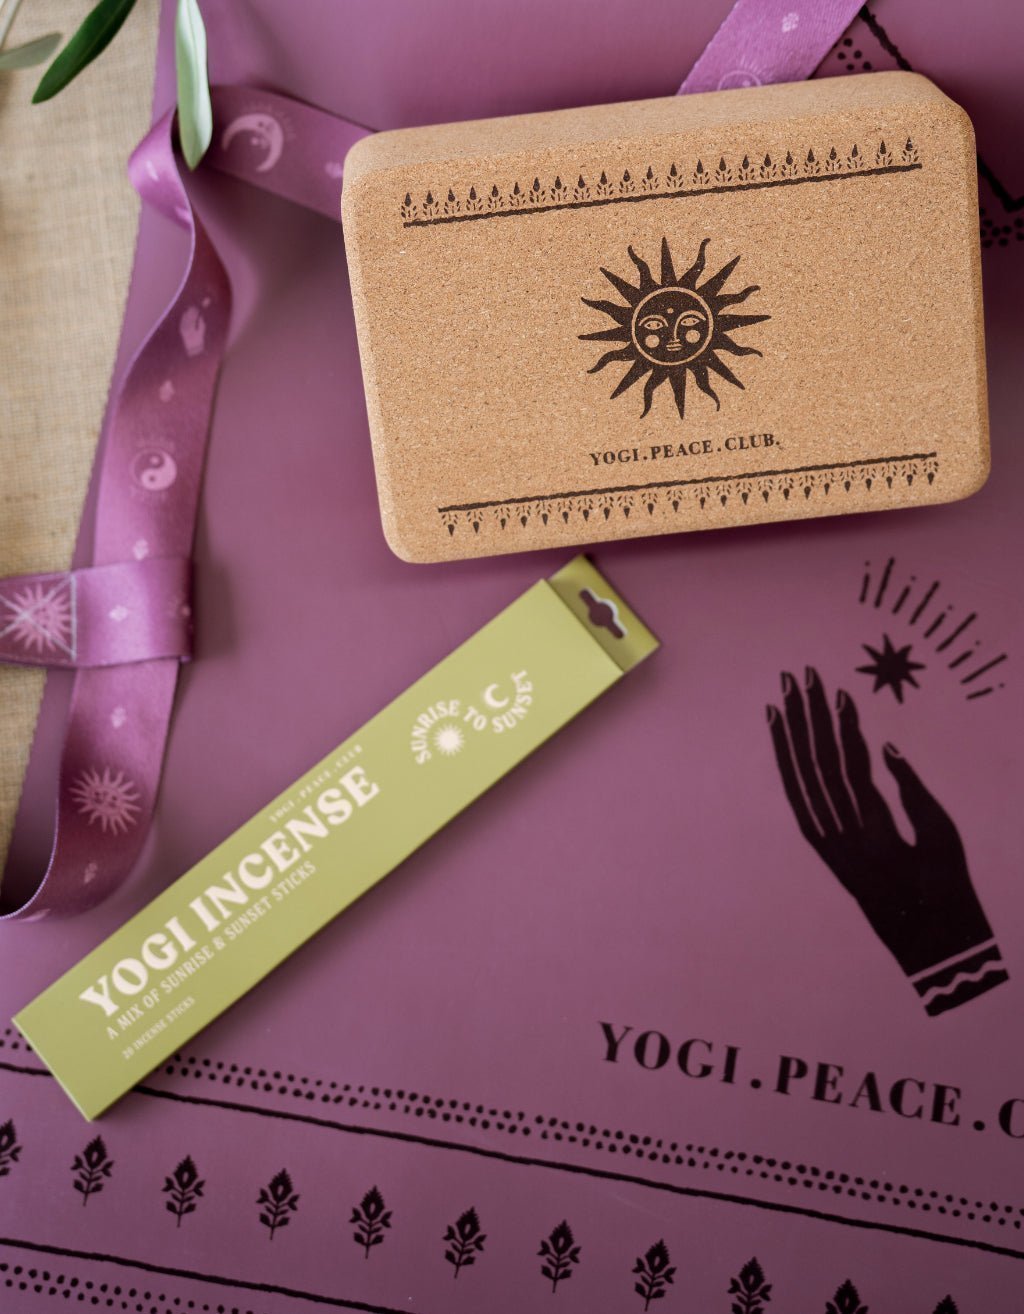 Yoga Pack - Deluxe Plum Yoga Mat + Block + Strap + Incense - Yogi Peace Club - Yoga Pack